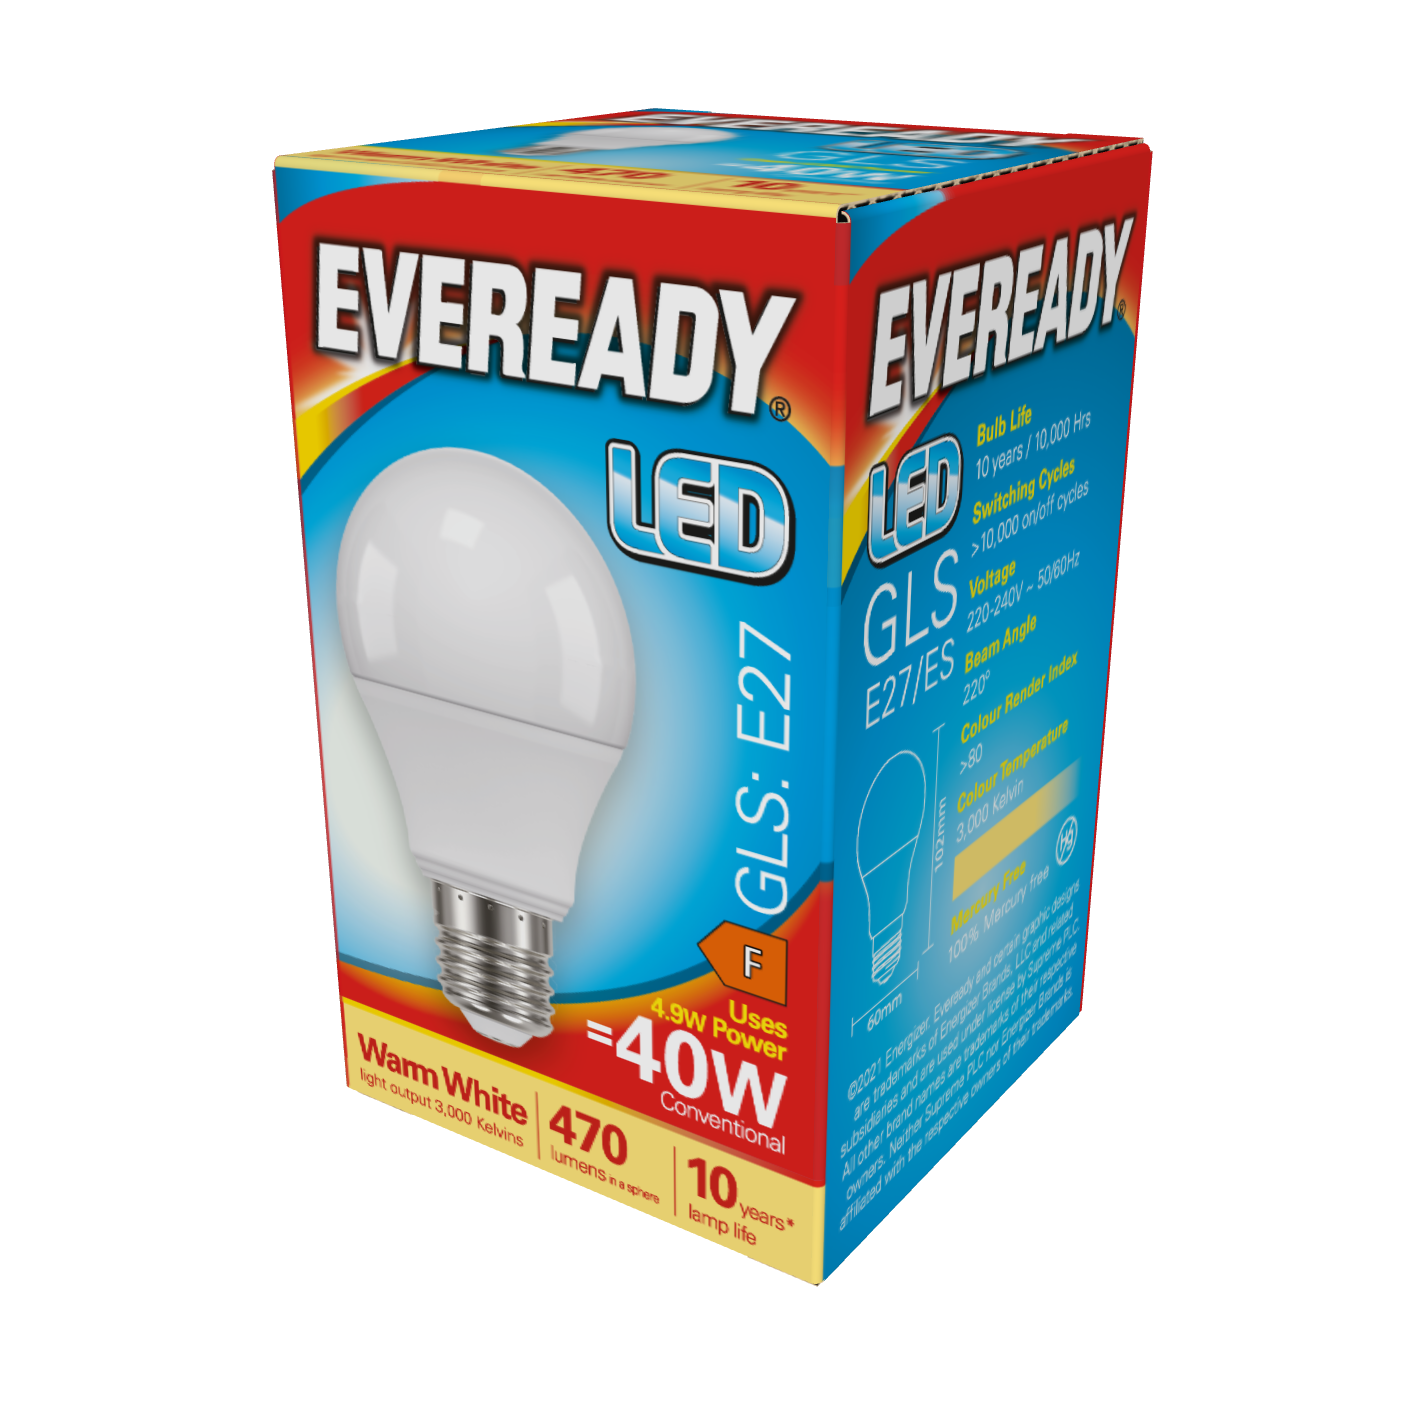 Eveready LED GLS E27 (ES) 470lm 4,9W 3.000K (Blanco Cálido), Caja de 1